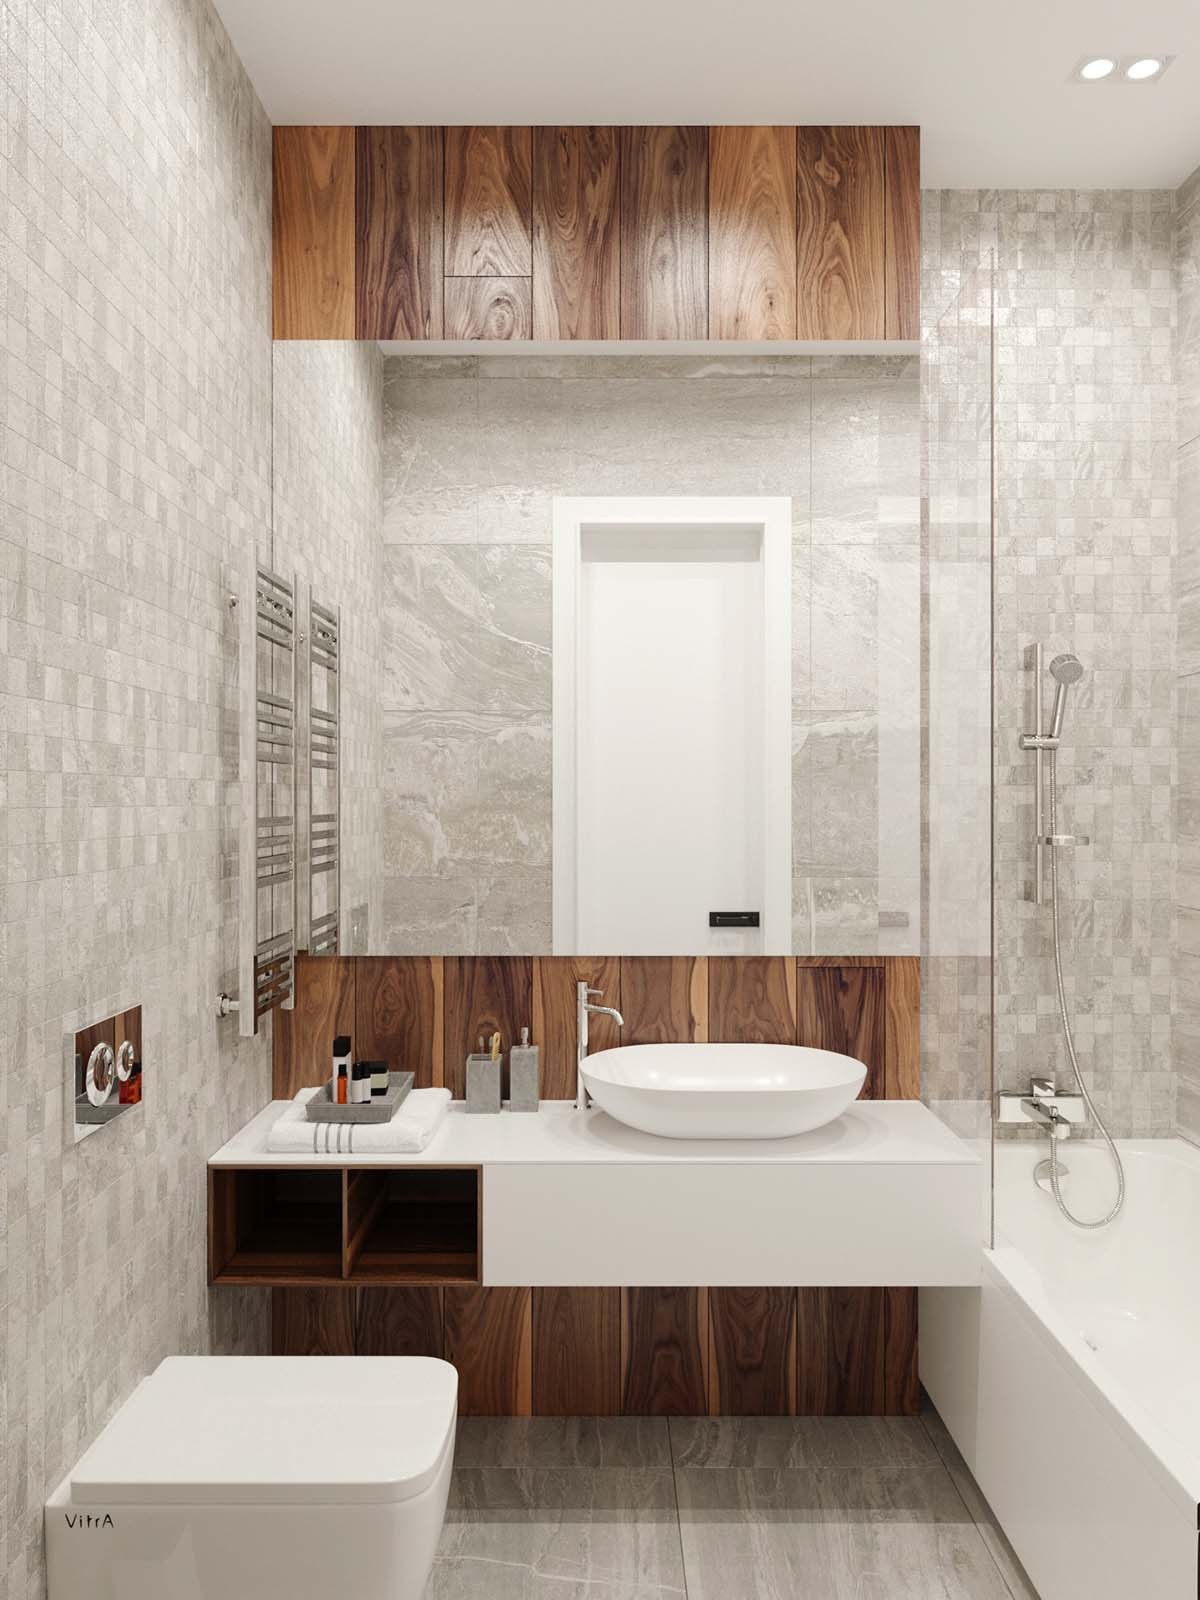 92平方米单身公寓卫生间浴室装修效果图_装信通网效果图